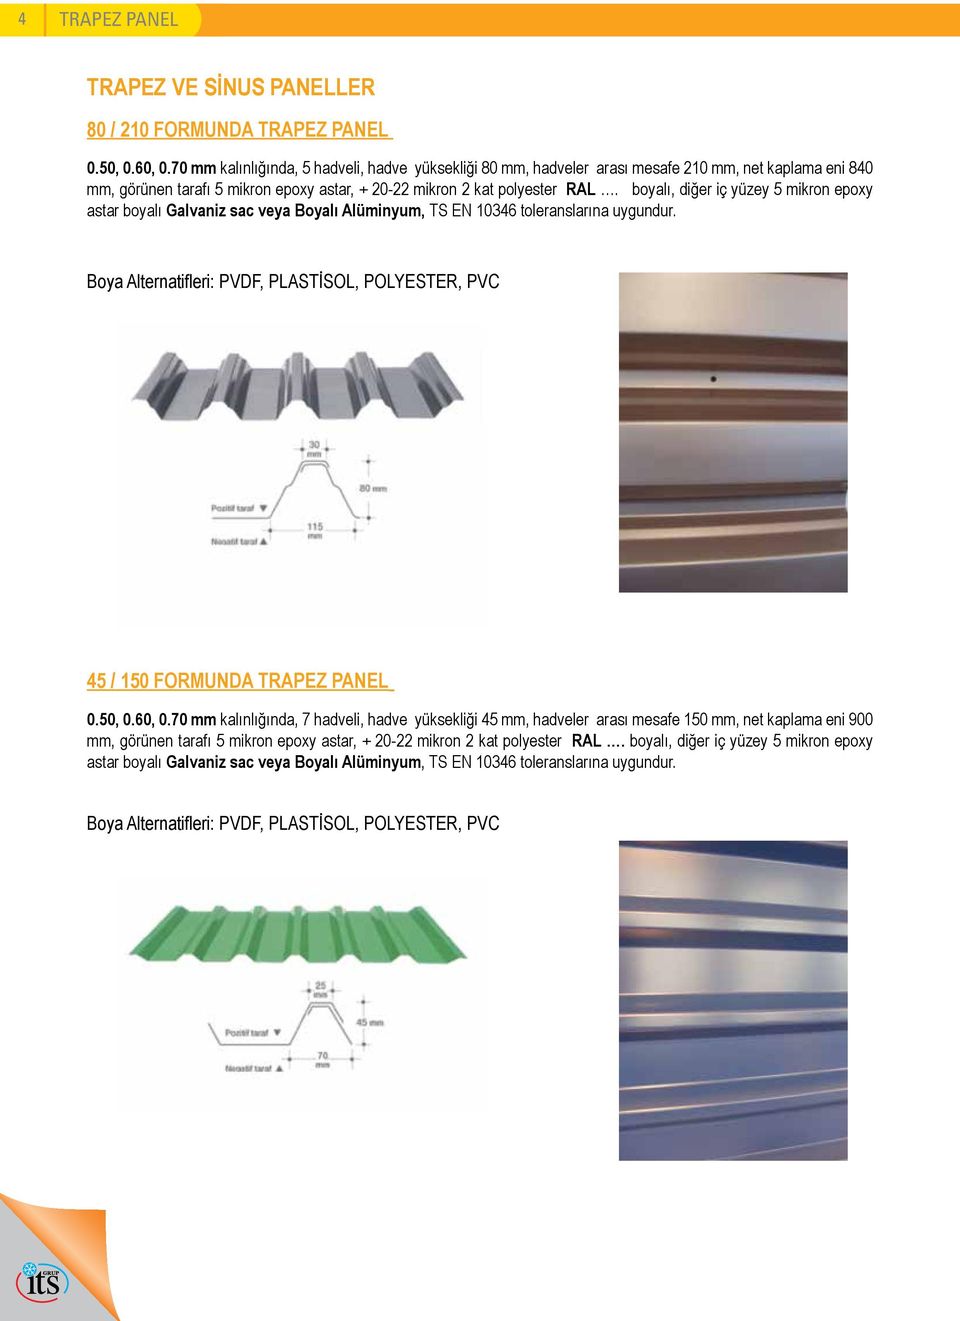 boyalı, diğer iç yüzey 5 mikron epoxy astar boyalı Galvaniz sac veya Boyalı Alüminyum, TS EN 10346 toleranslarına uygundur.